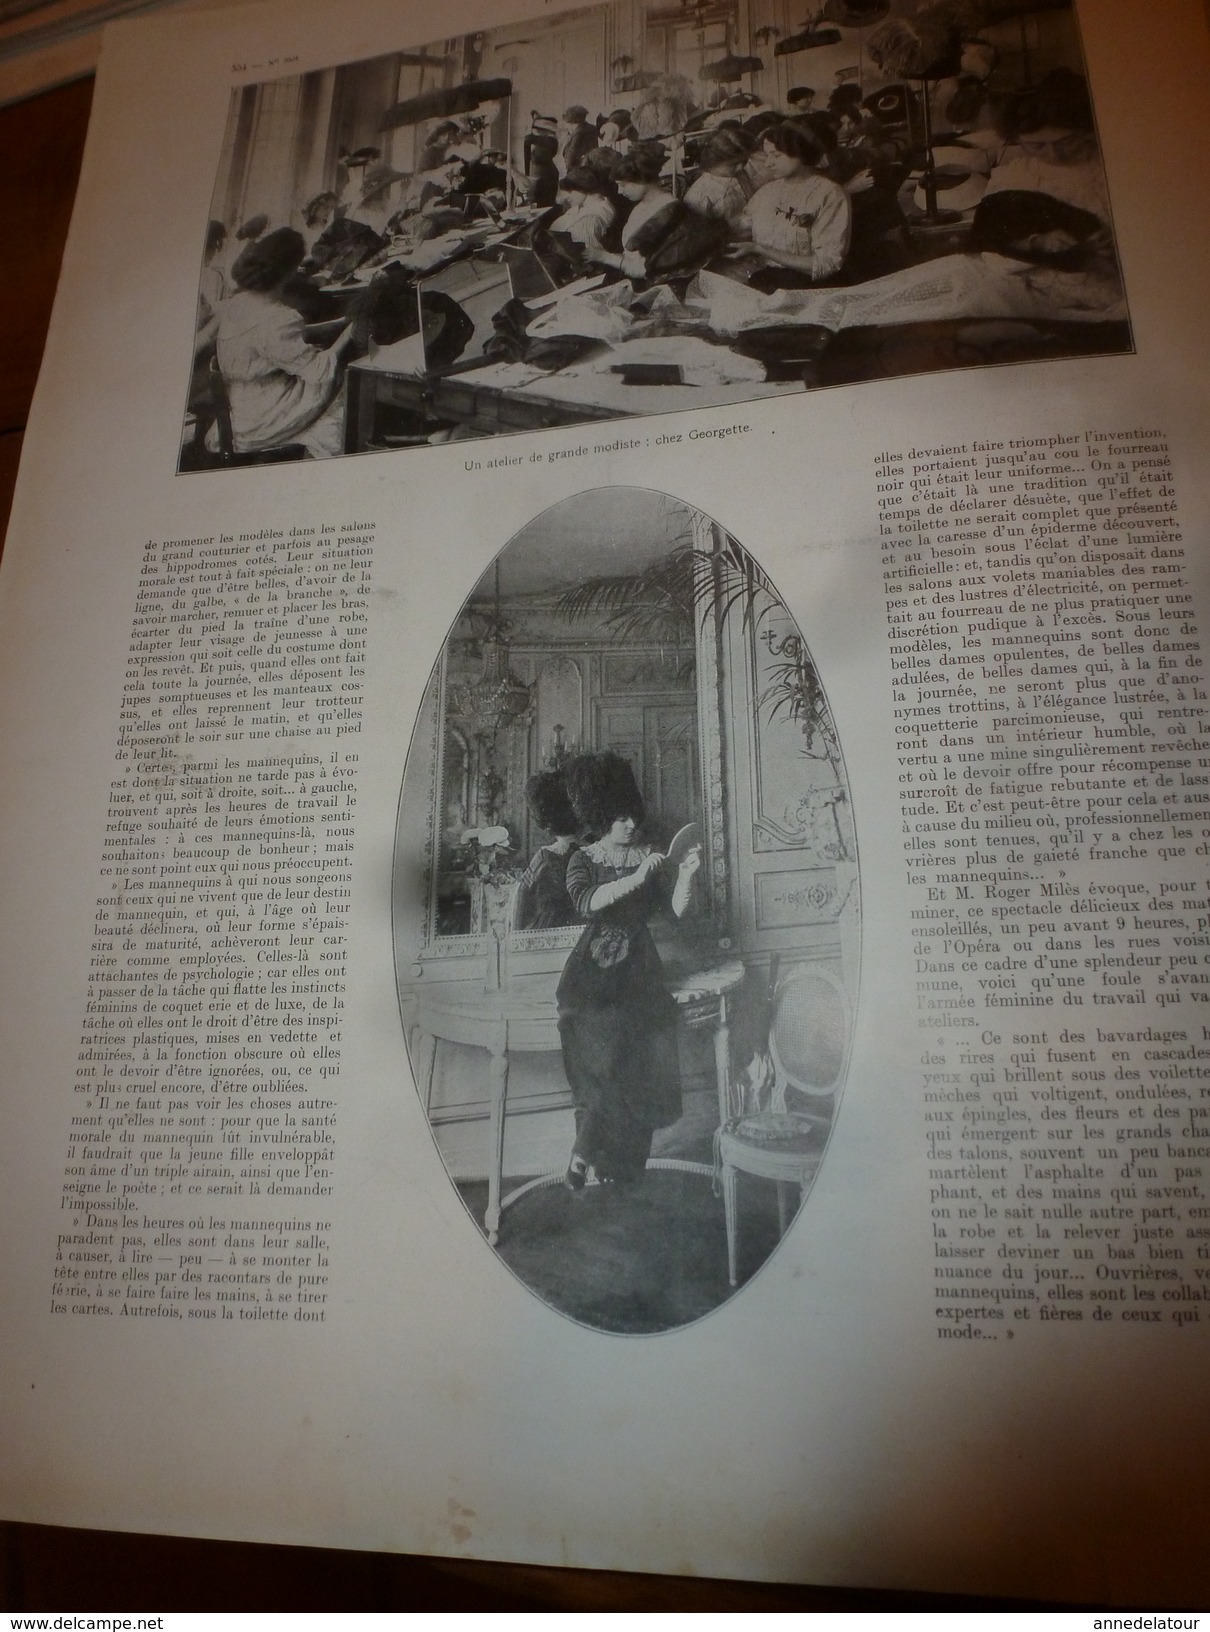 1910 L'ILLUSTRATION:Crue de la SEINE;Suffren coupé en 2 à Boulogne;TOLSTOÏ;Salon de la Mode;Grahame White en biplan;etc